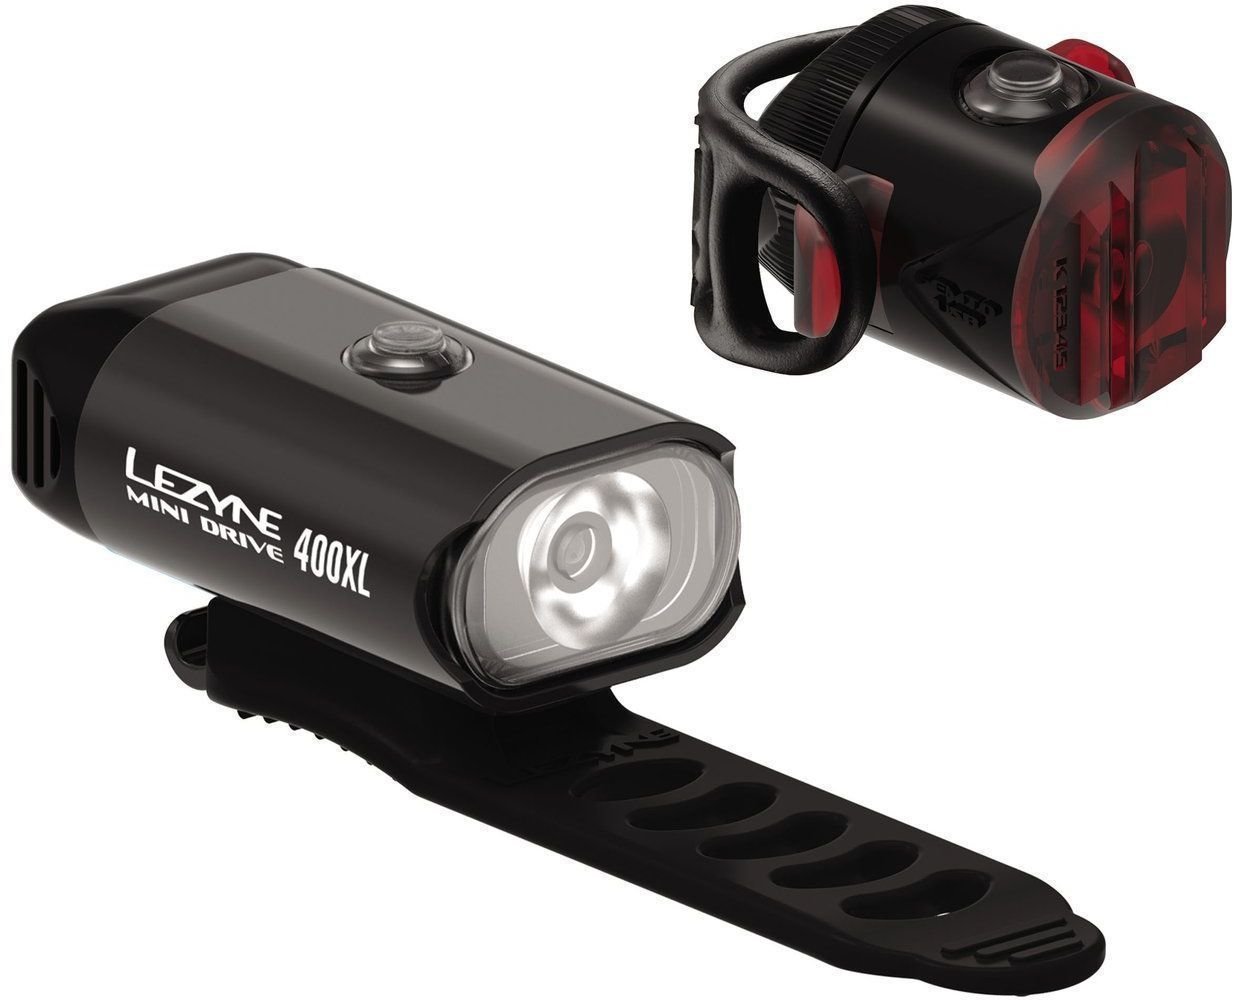 Cycling light Lezyne Mini Drive 400XL / Femto USB Drive Black Front 400 lm / Rear 5 lm Cycling light